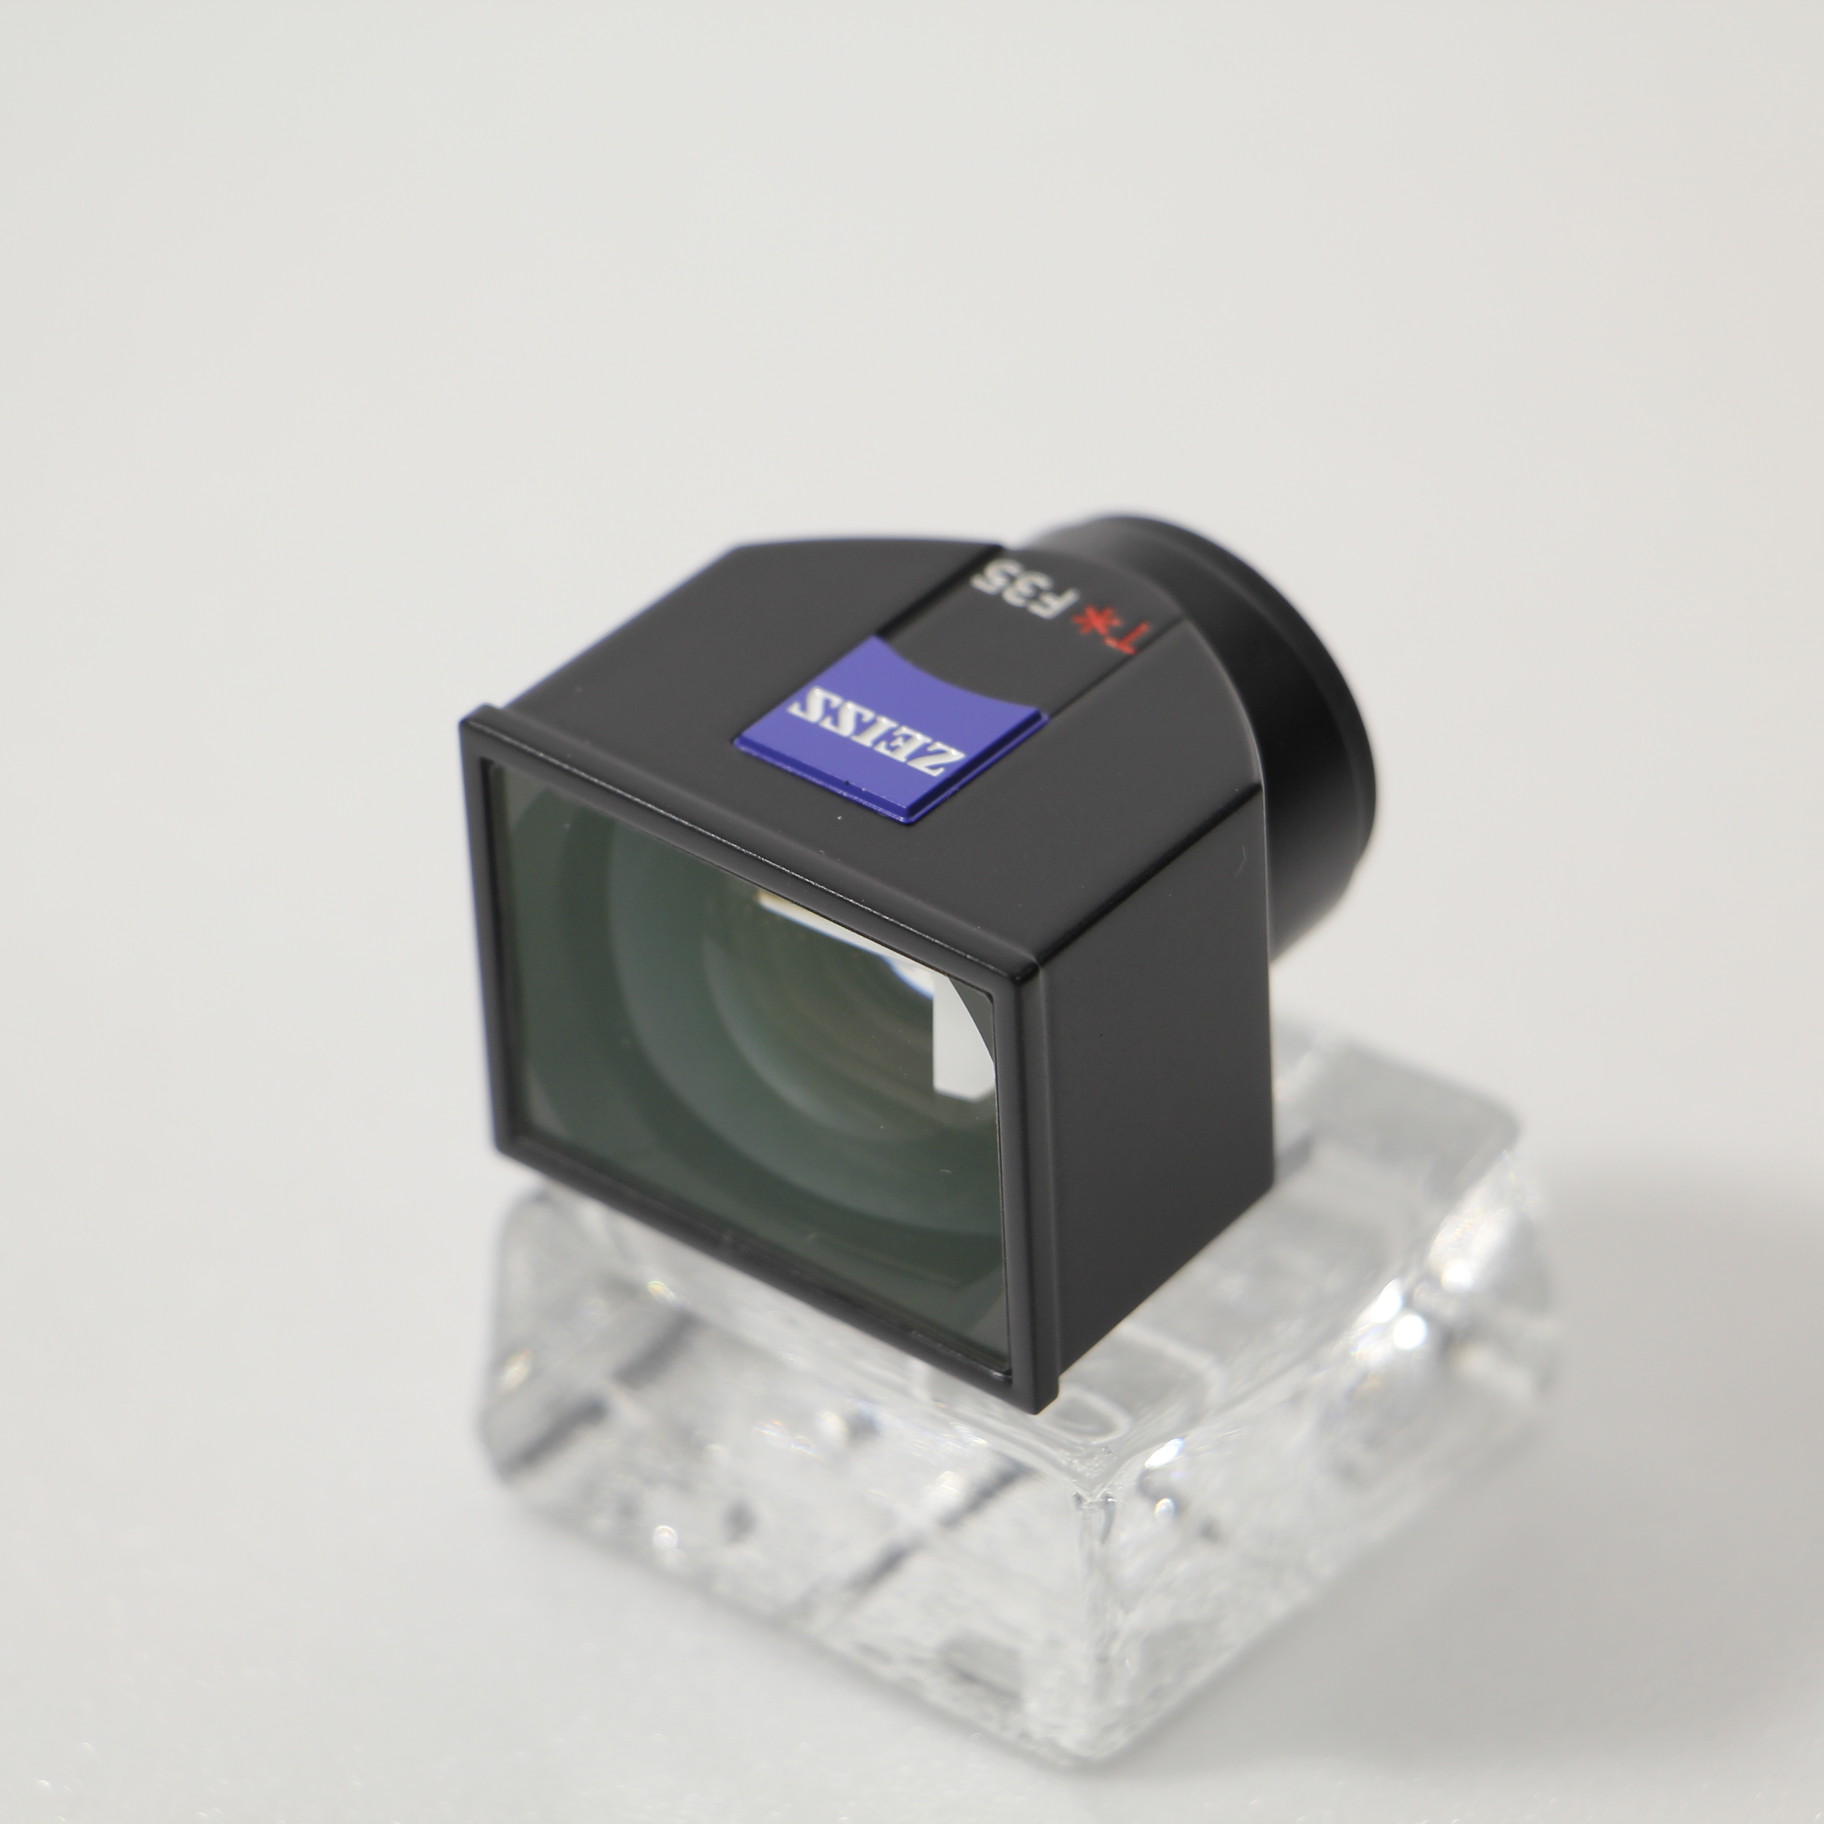 ソニー 光学ビューファインダーキット FDA-V1Kタイプファインダーアクセサリー